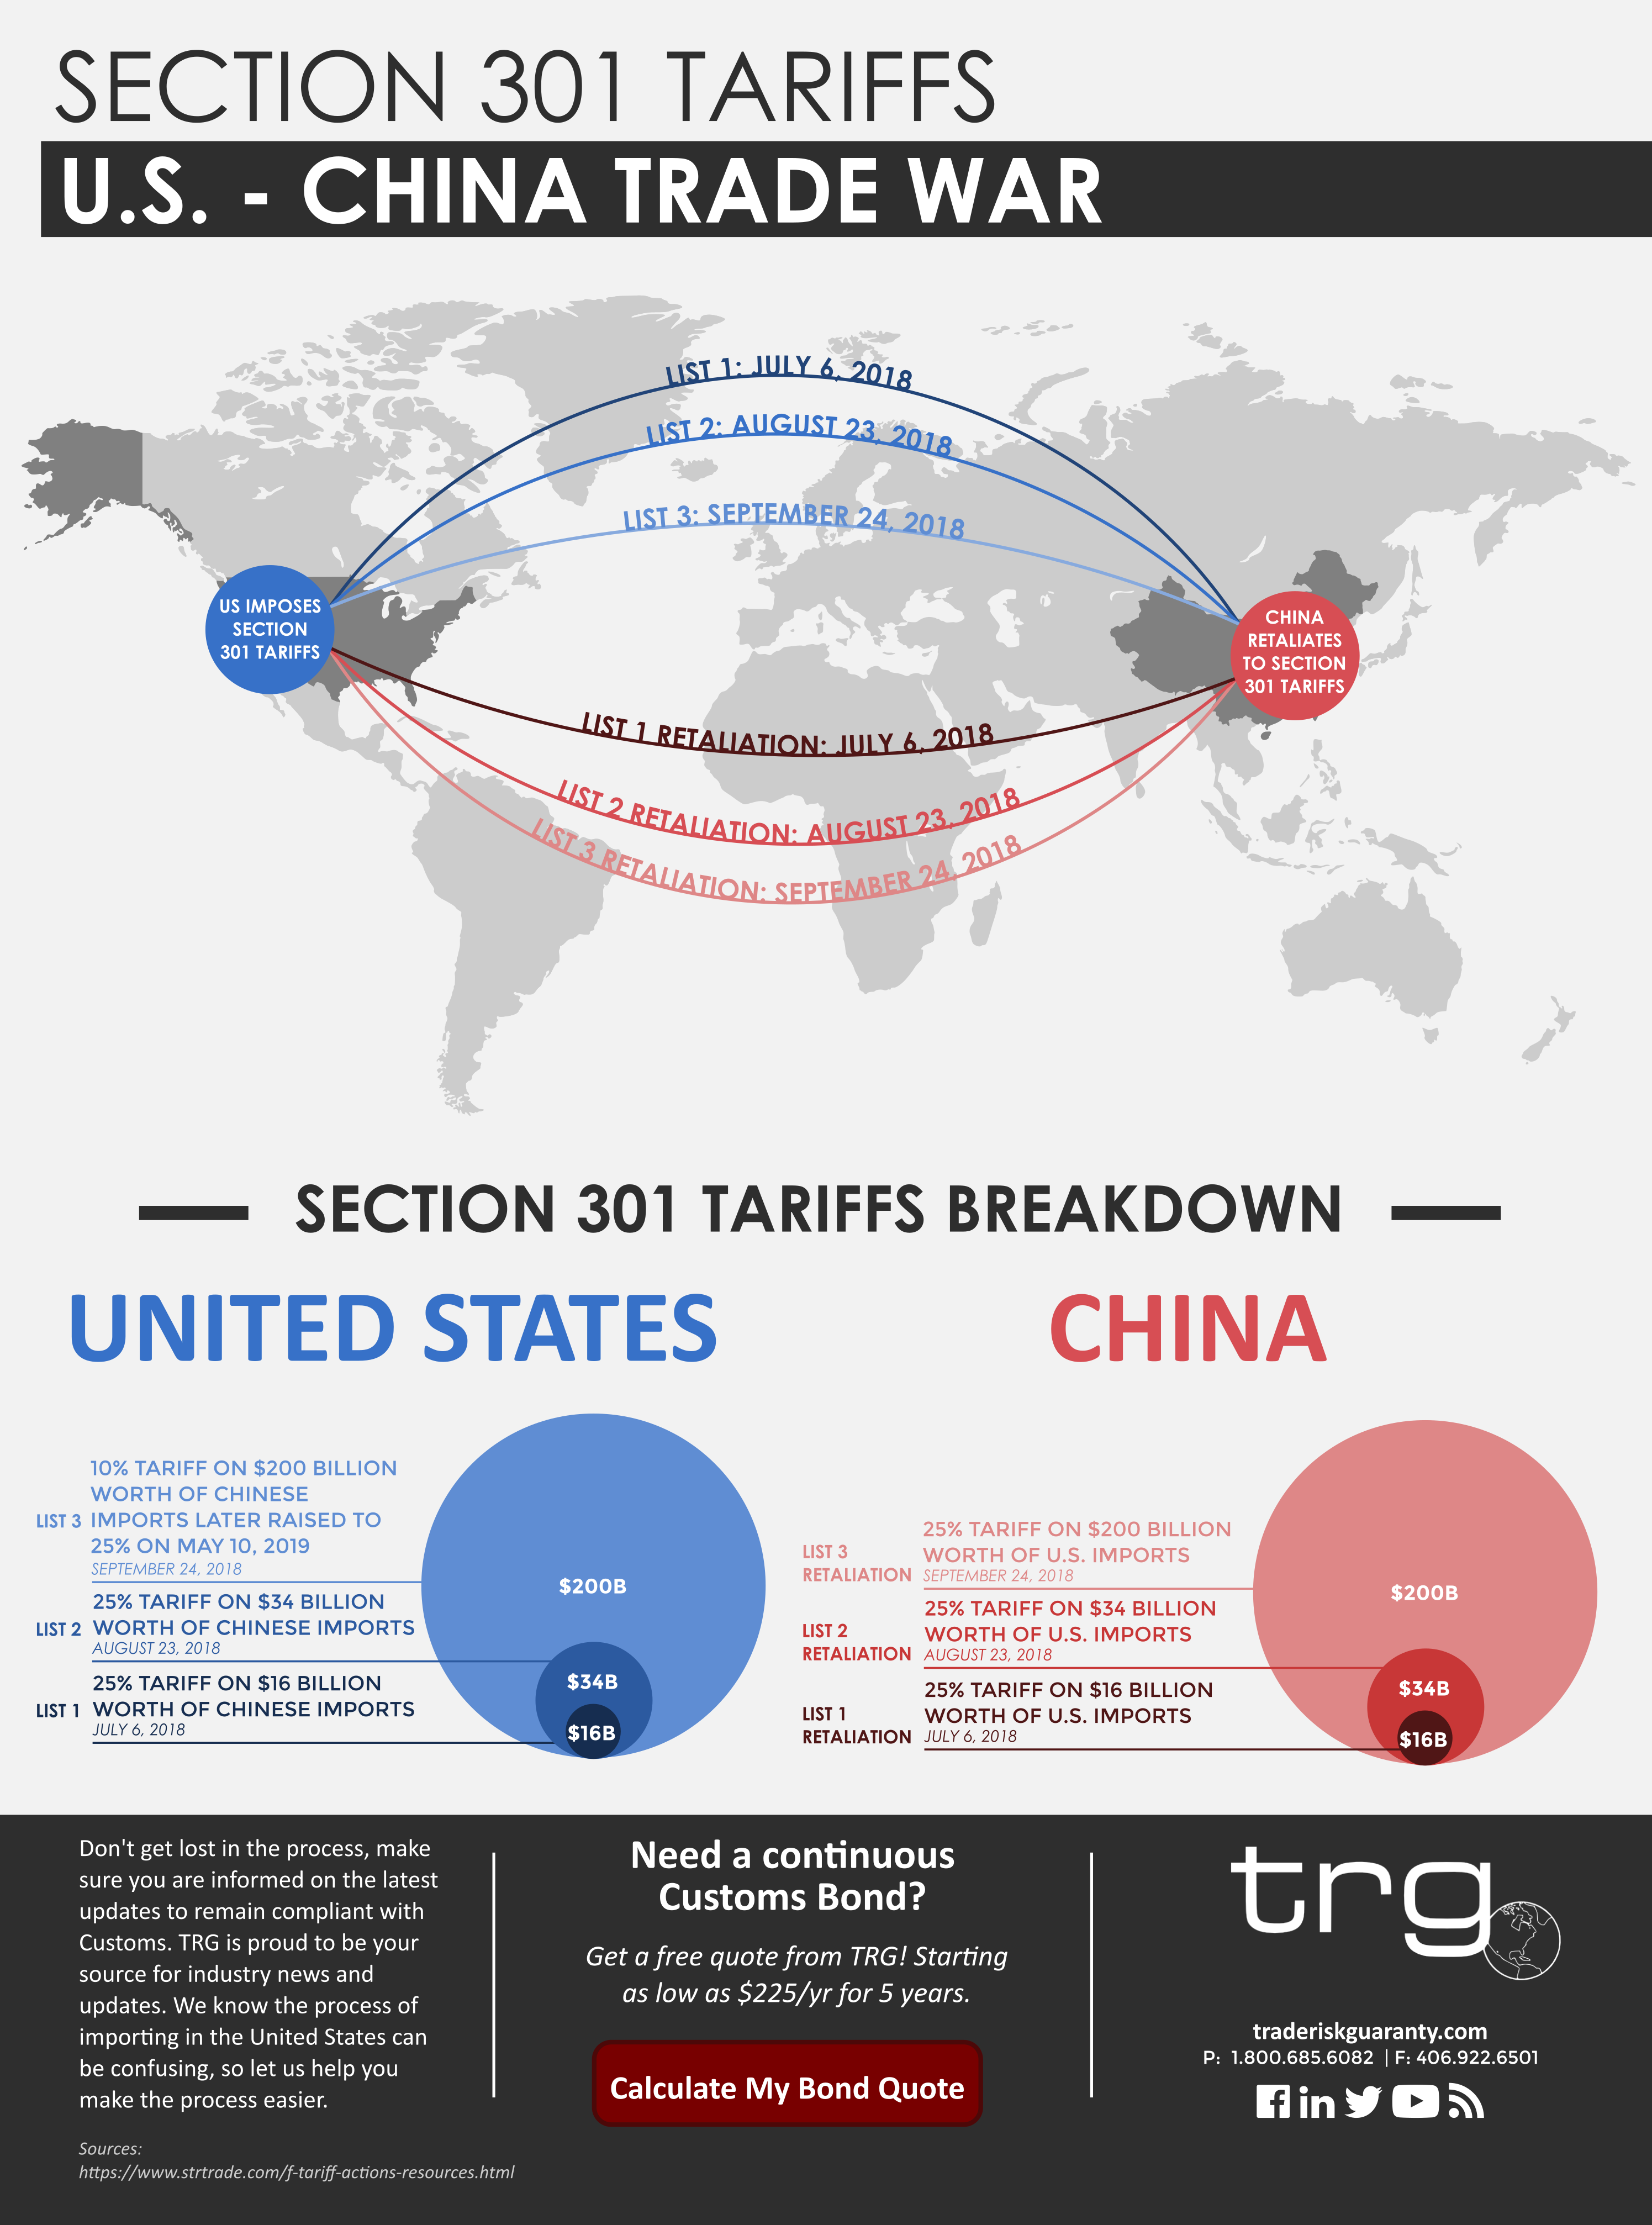 [Infographic] Section 301 Tariffs U.S. & China Trade War TRG Peak Blog